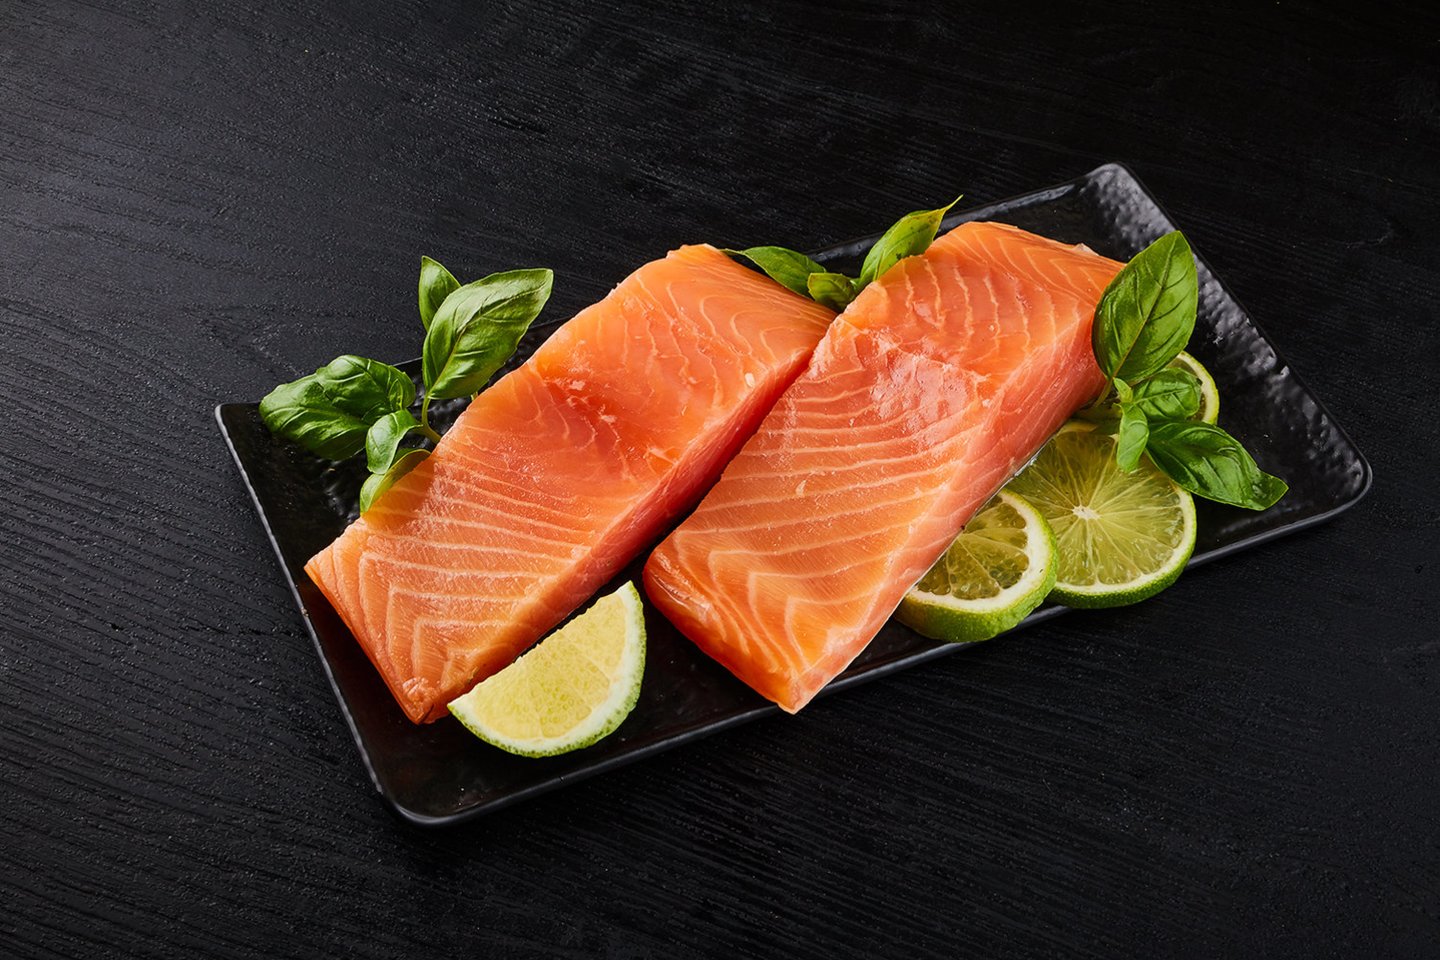 Šviežia žuvis – vienas vertingiausių organizmui maisto produktų, turinčių daugybę naudingų vitaminų bei elementų.